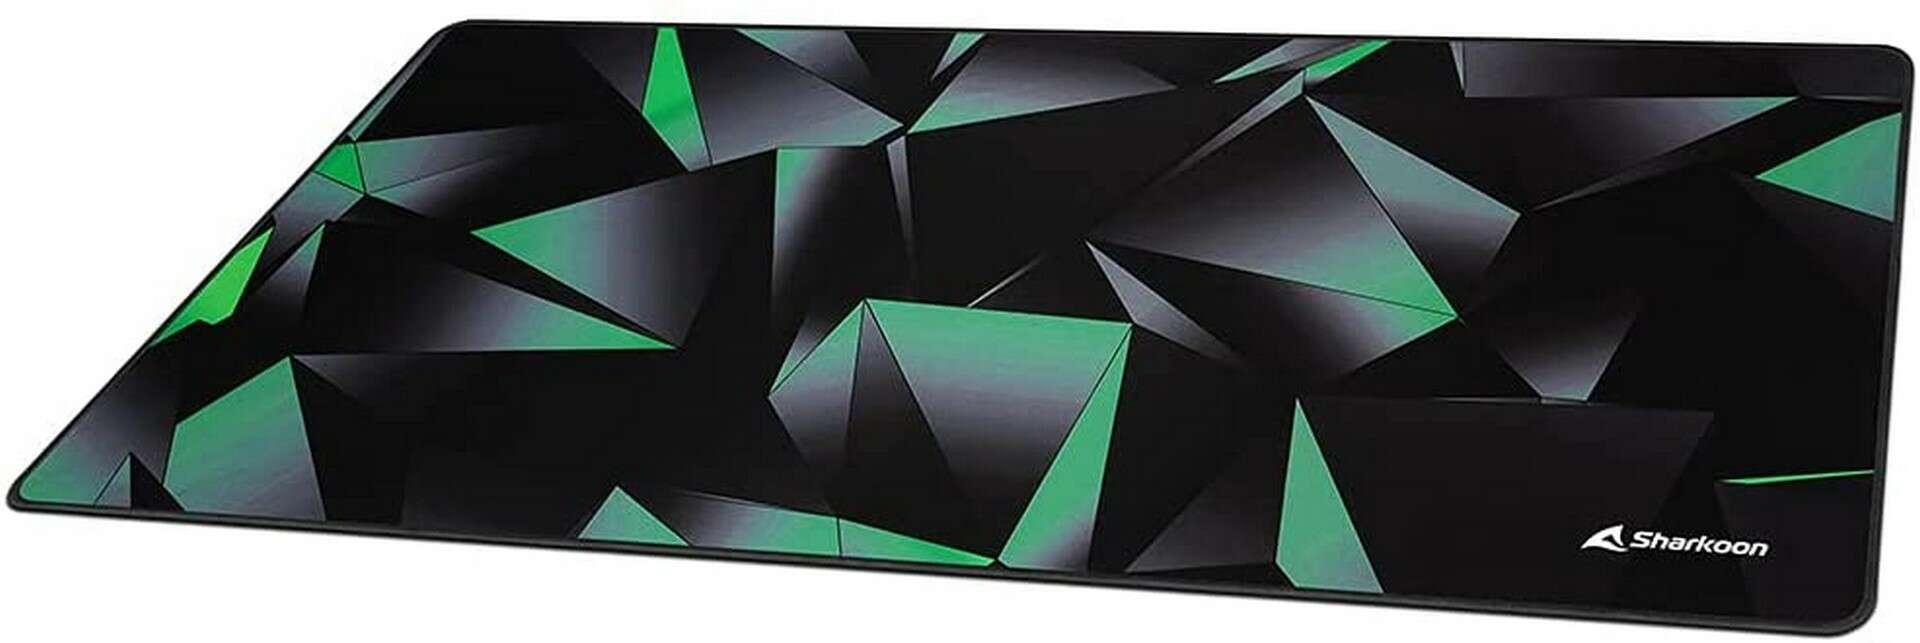 Sharkoon SKILLER SGP30 900 x 400 x 2.5 mm fekete-zöld-szürke game...